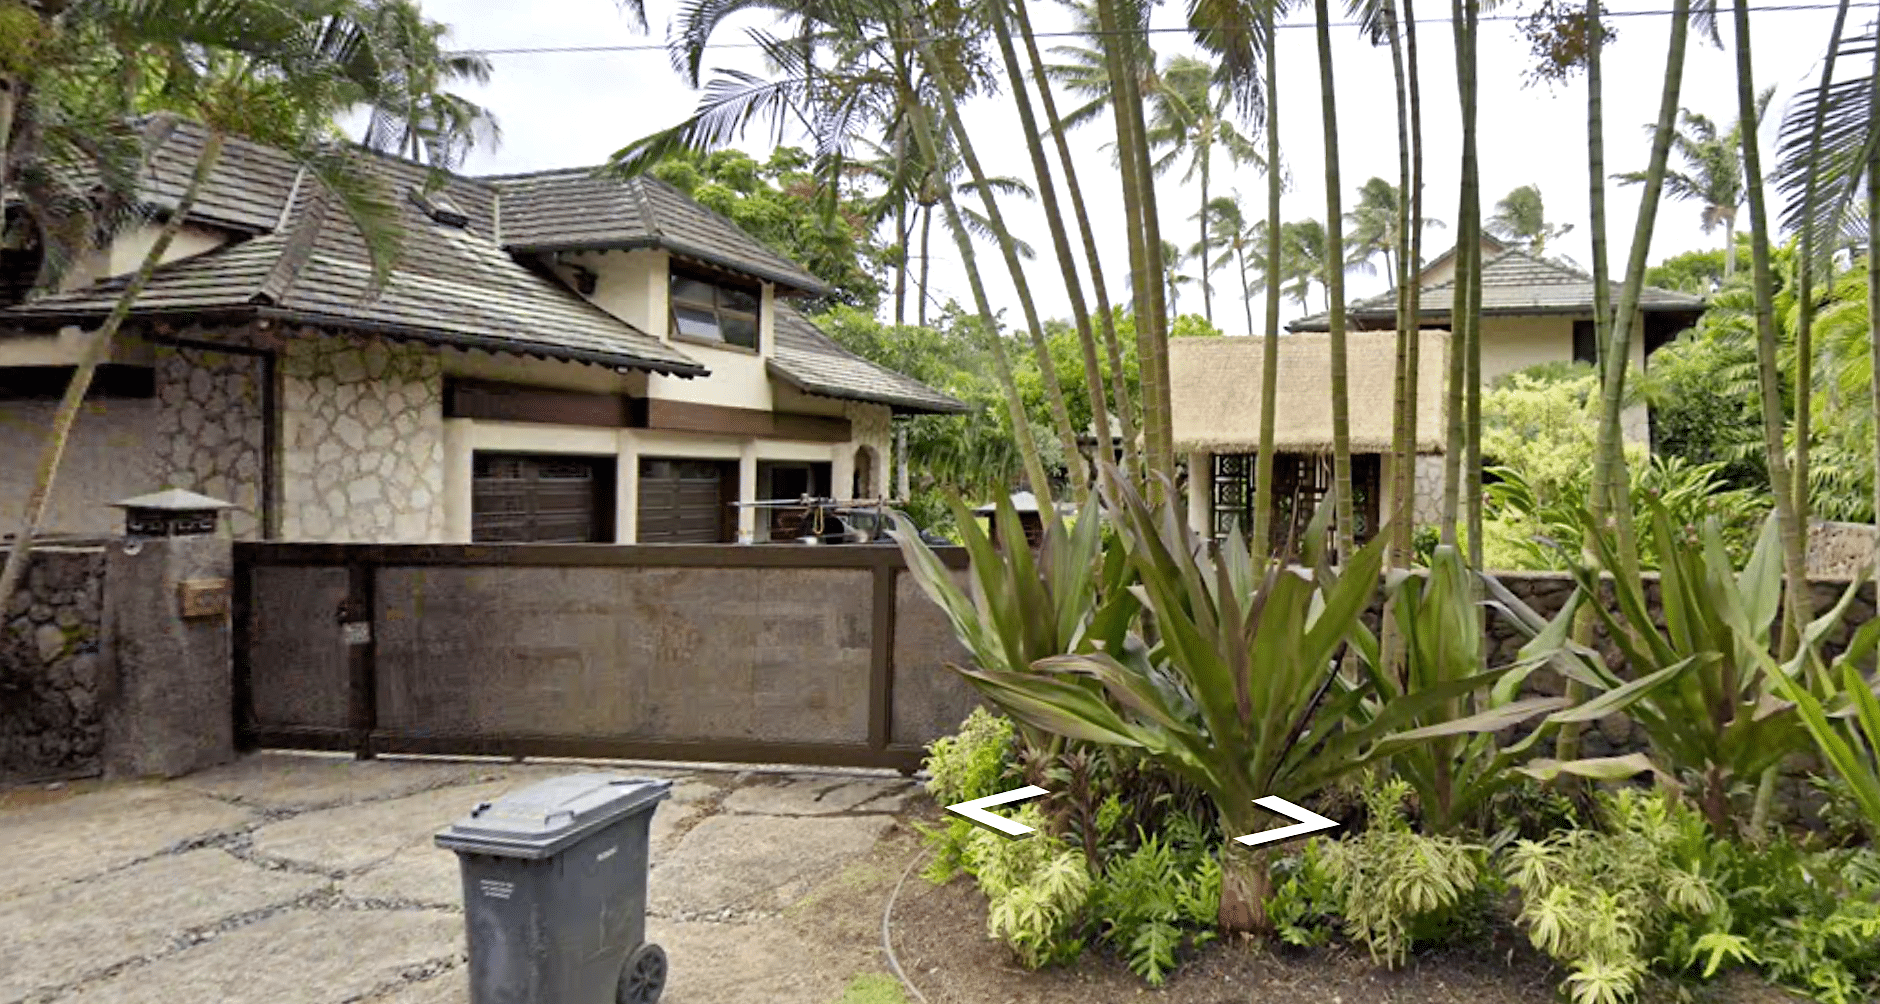 Kelly Slater house North Shore Oahu